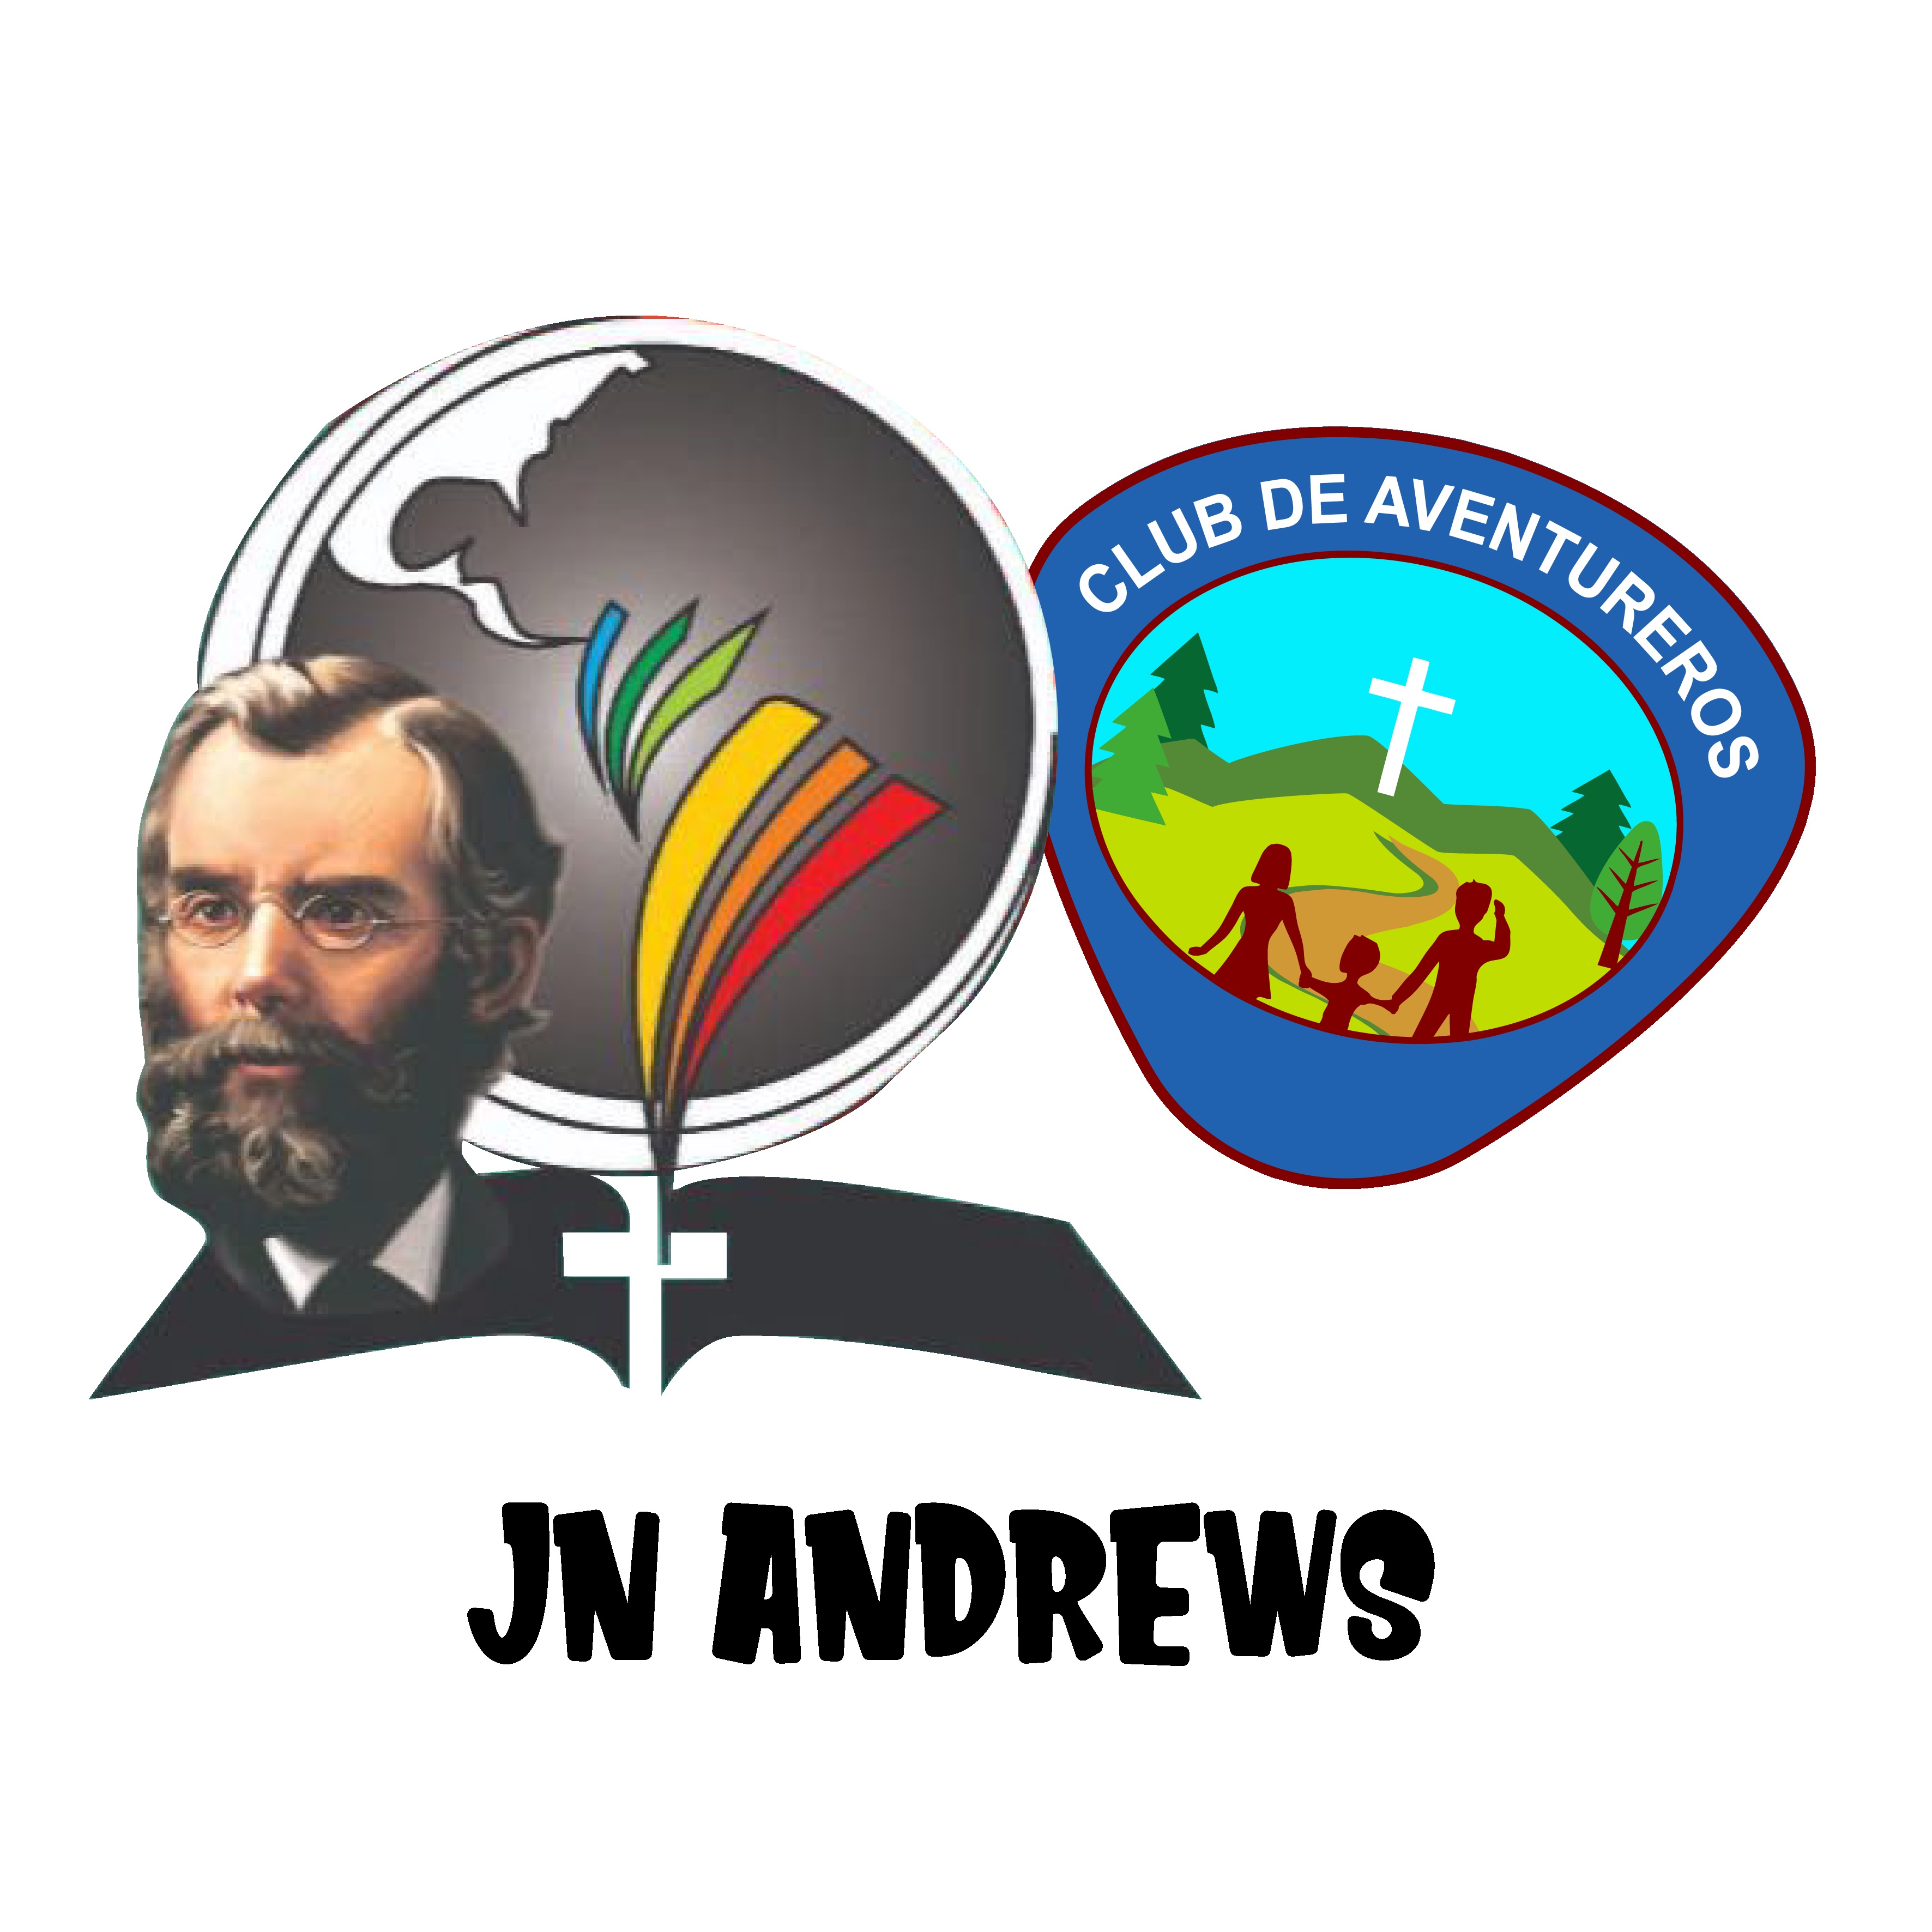 J. N. ANDREWS